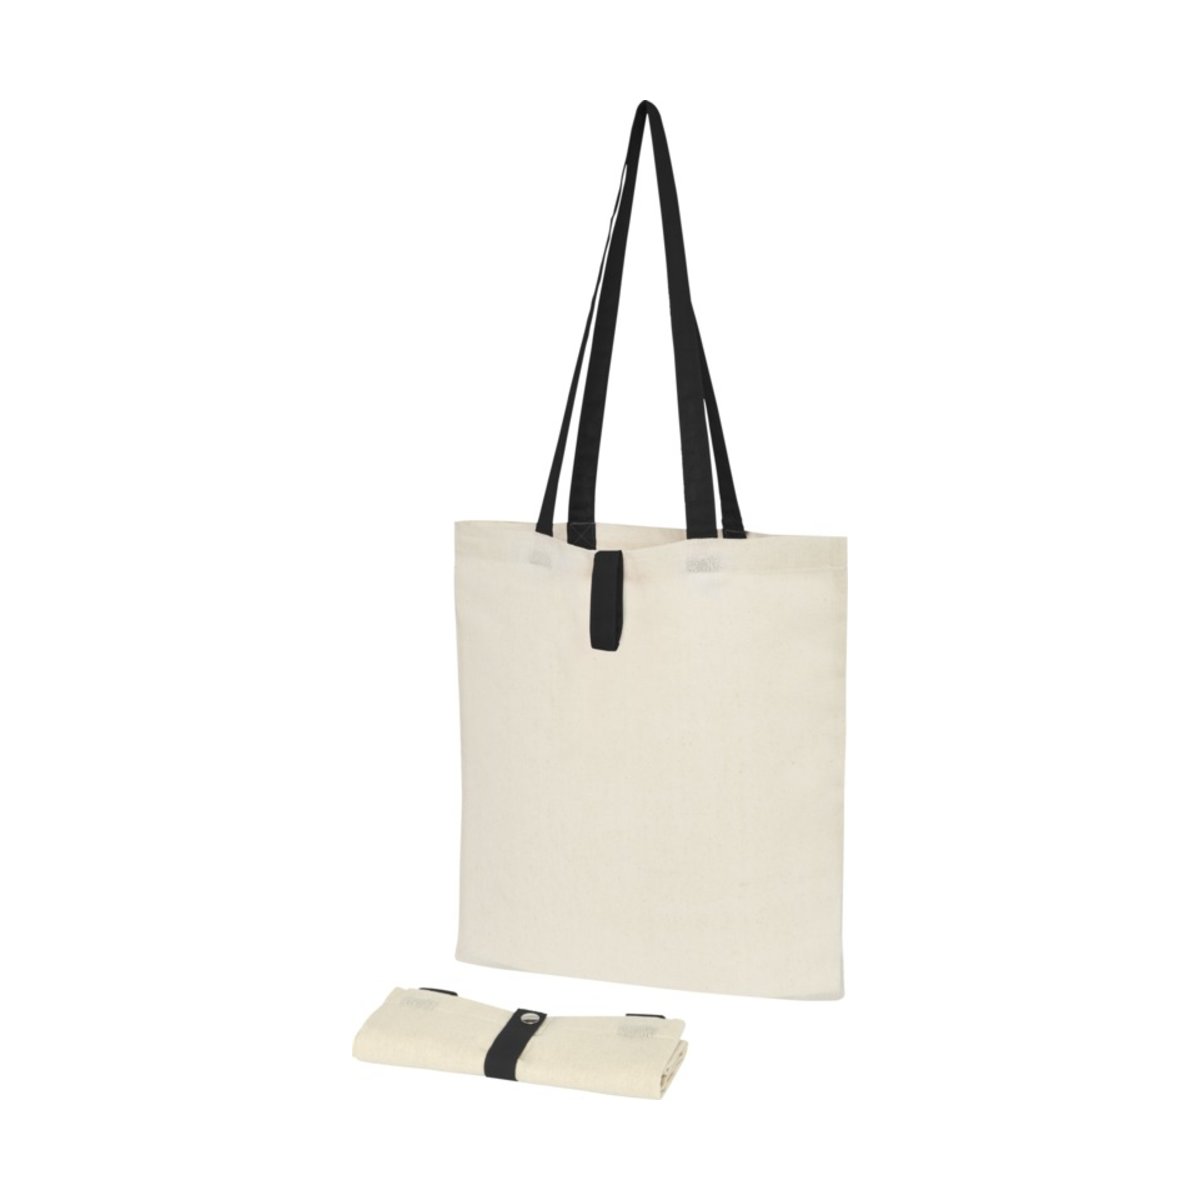 Składana torba na zakupy Nevada wykonana z bawełny o gramaturze 100 g/m²